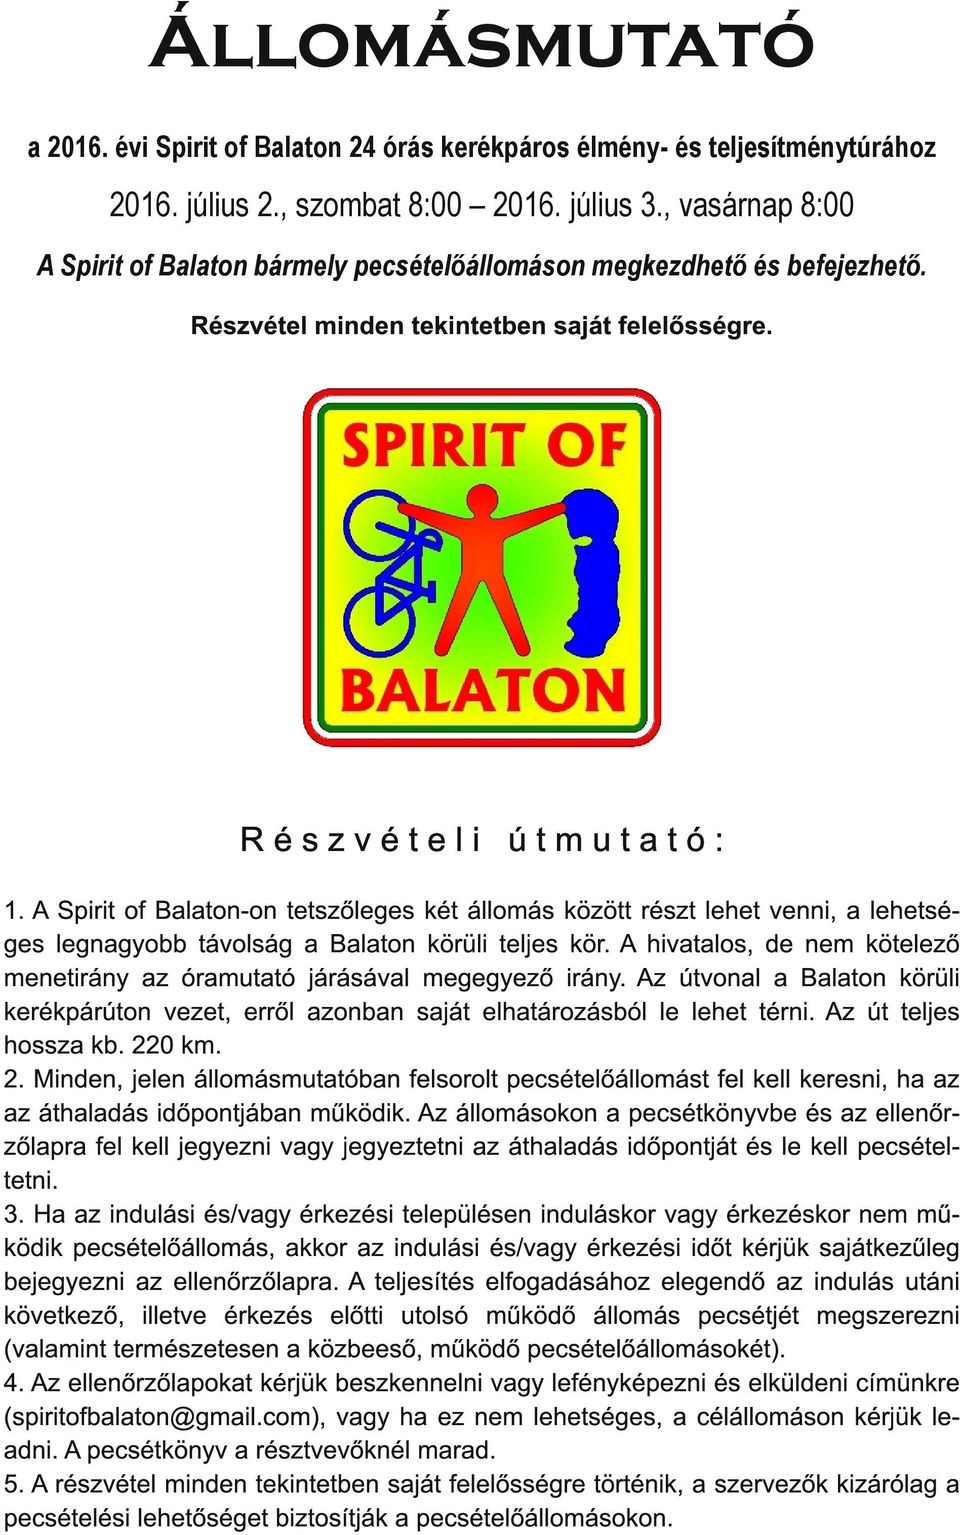 A Spirit of Balaton-on tetszőleges két állomás között részt lehet venni, a lehetséges legnagyobb távolság a Balaton körüli teljes kör.